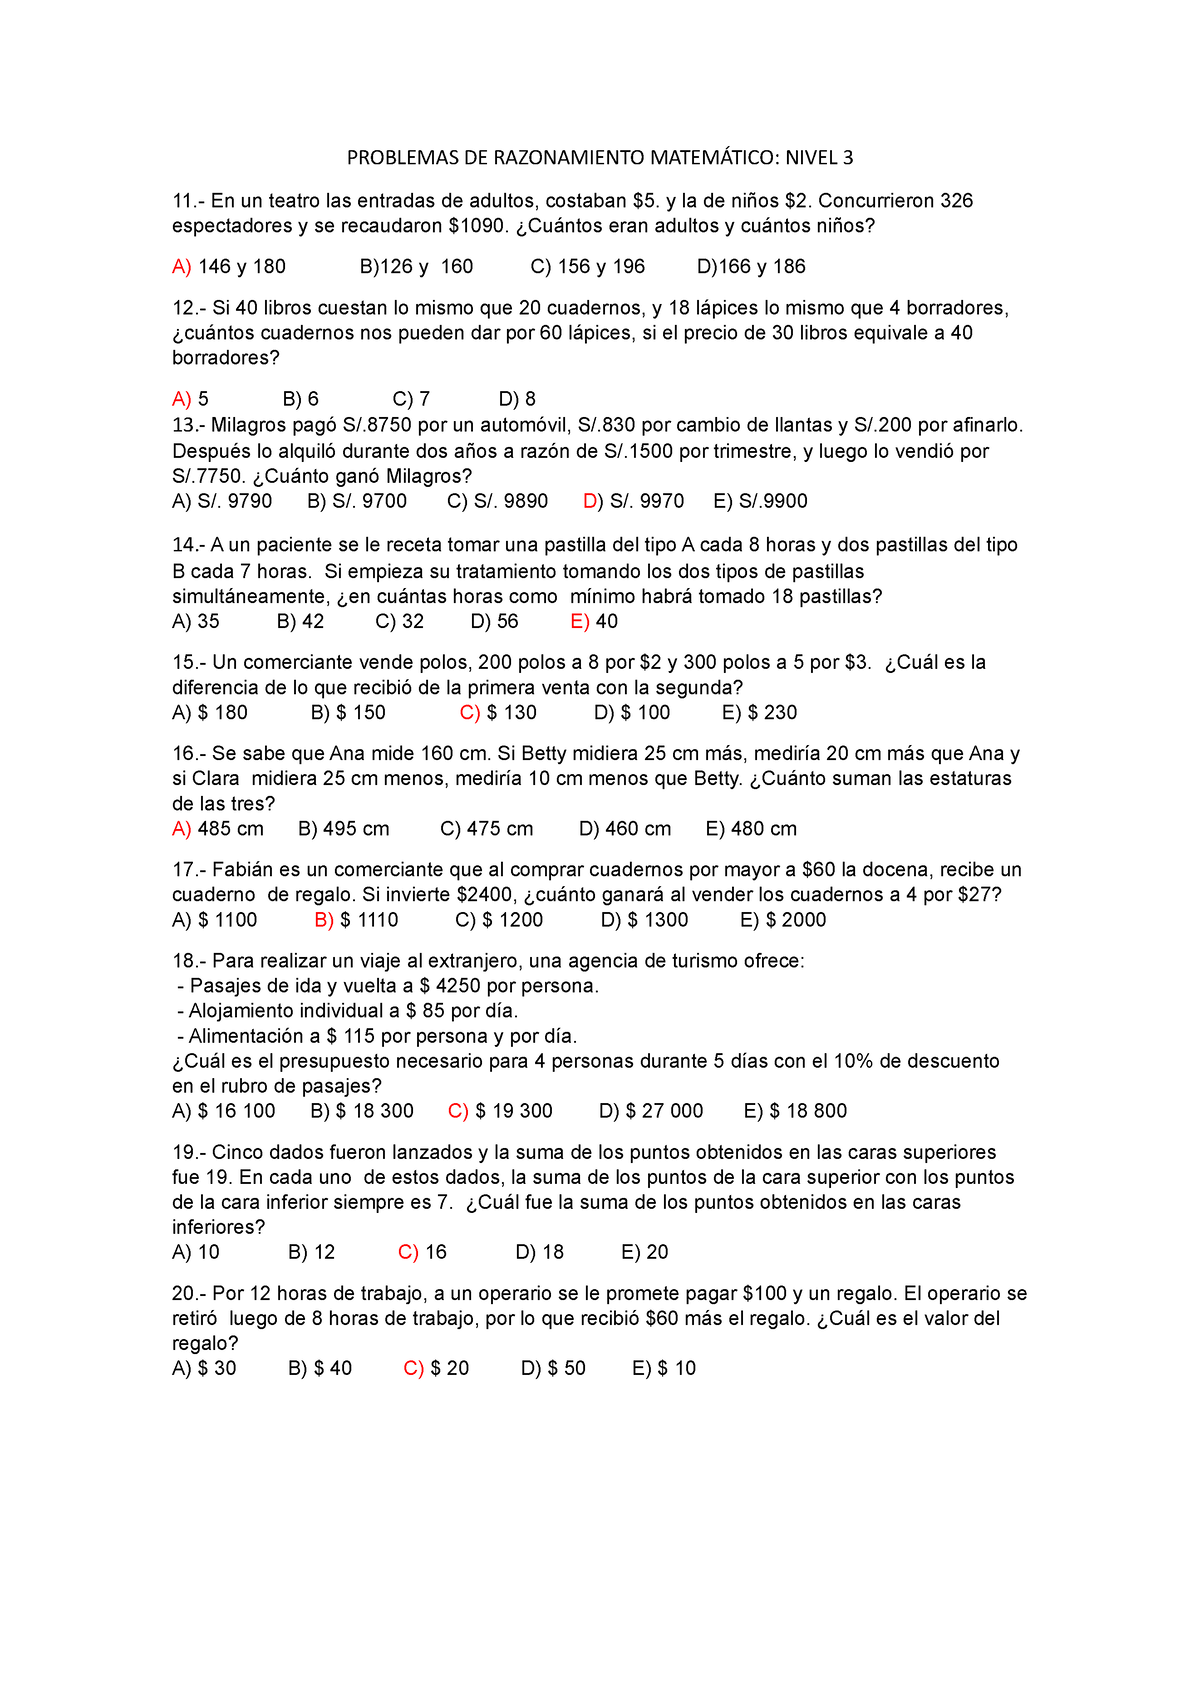 Problemas DE Razonamiento Matemático Nivel 3 - PROBLEMAS DE RAZONAMIENTO  MATEMÁTICO: NIVEL 3  En - Studocu